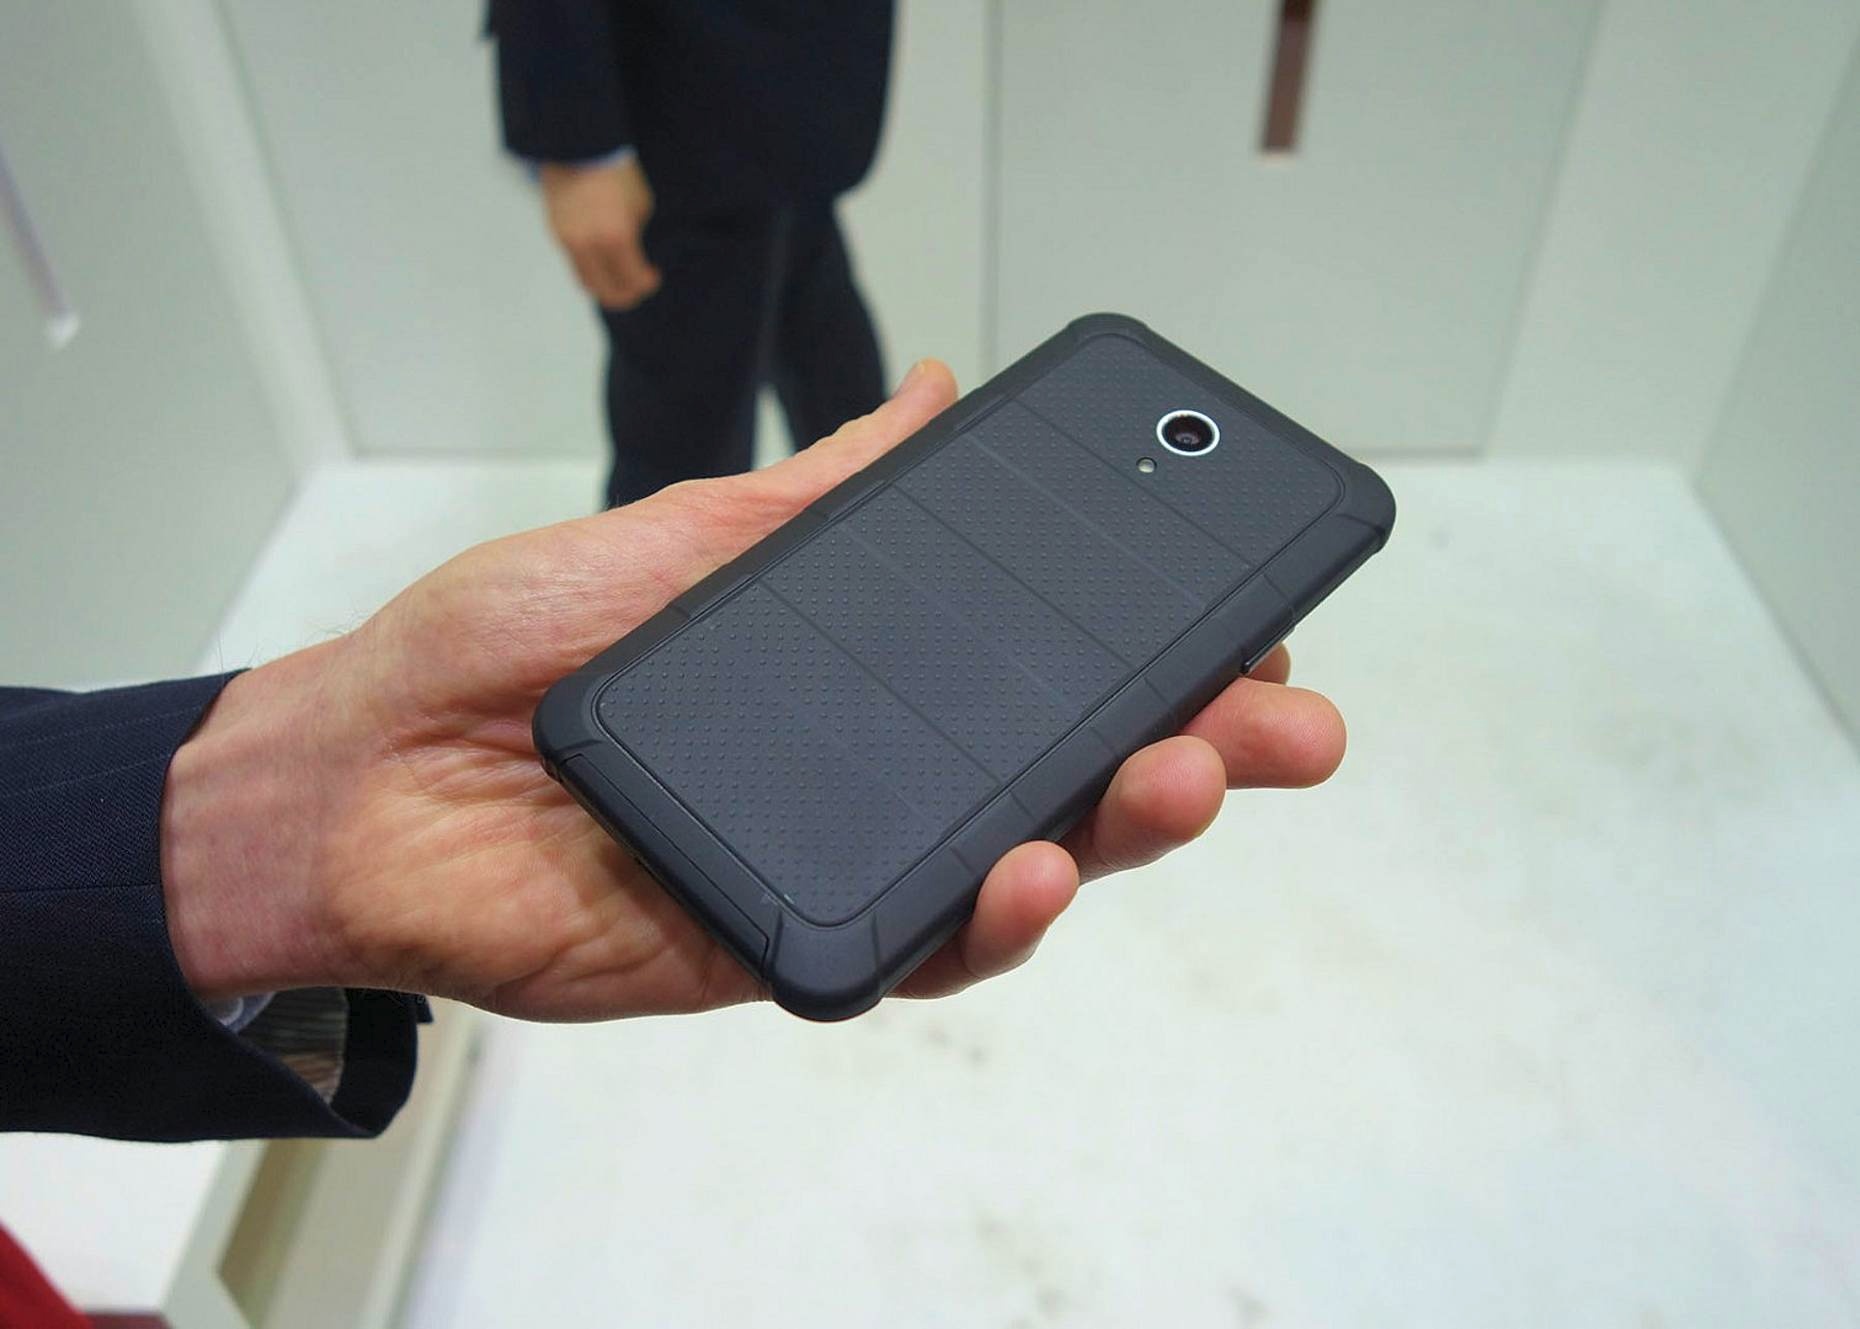 Пылевлагозащищённый ударопрочный корпус смартфона Kyocera (фото: David Nield/Gizmag).